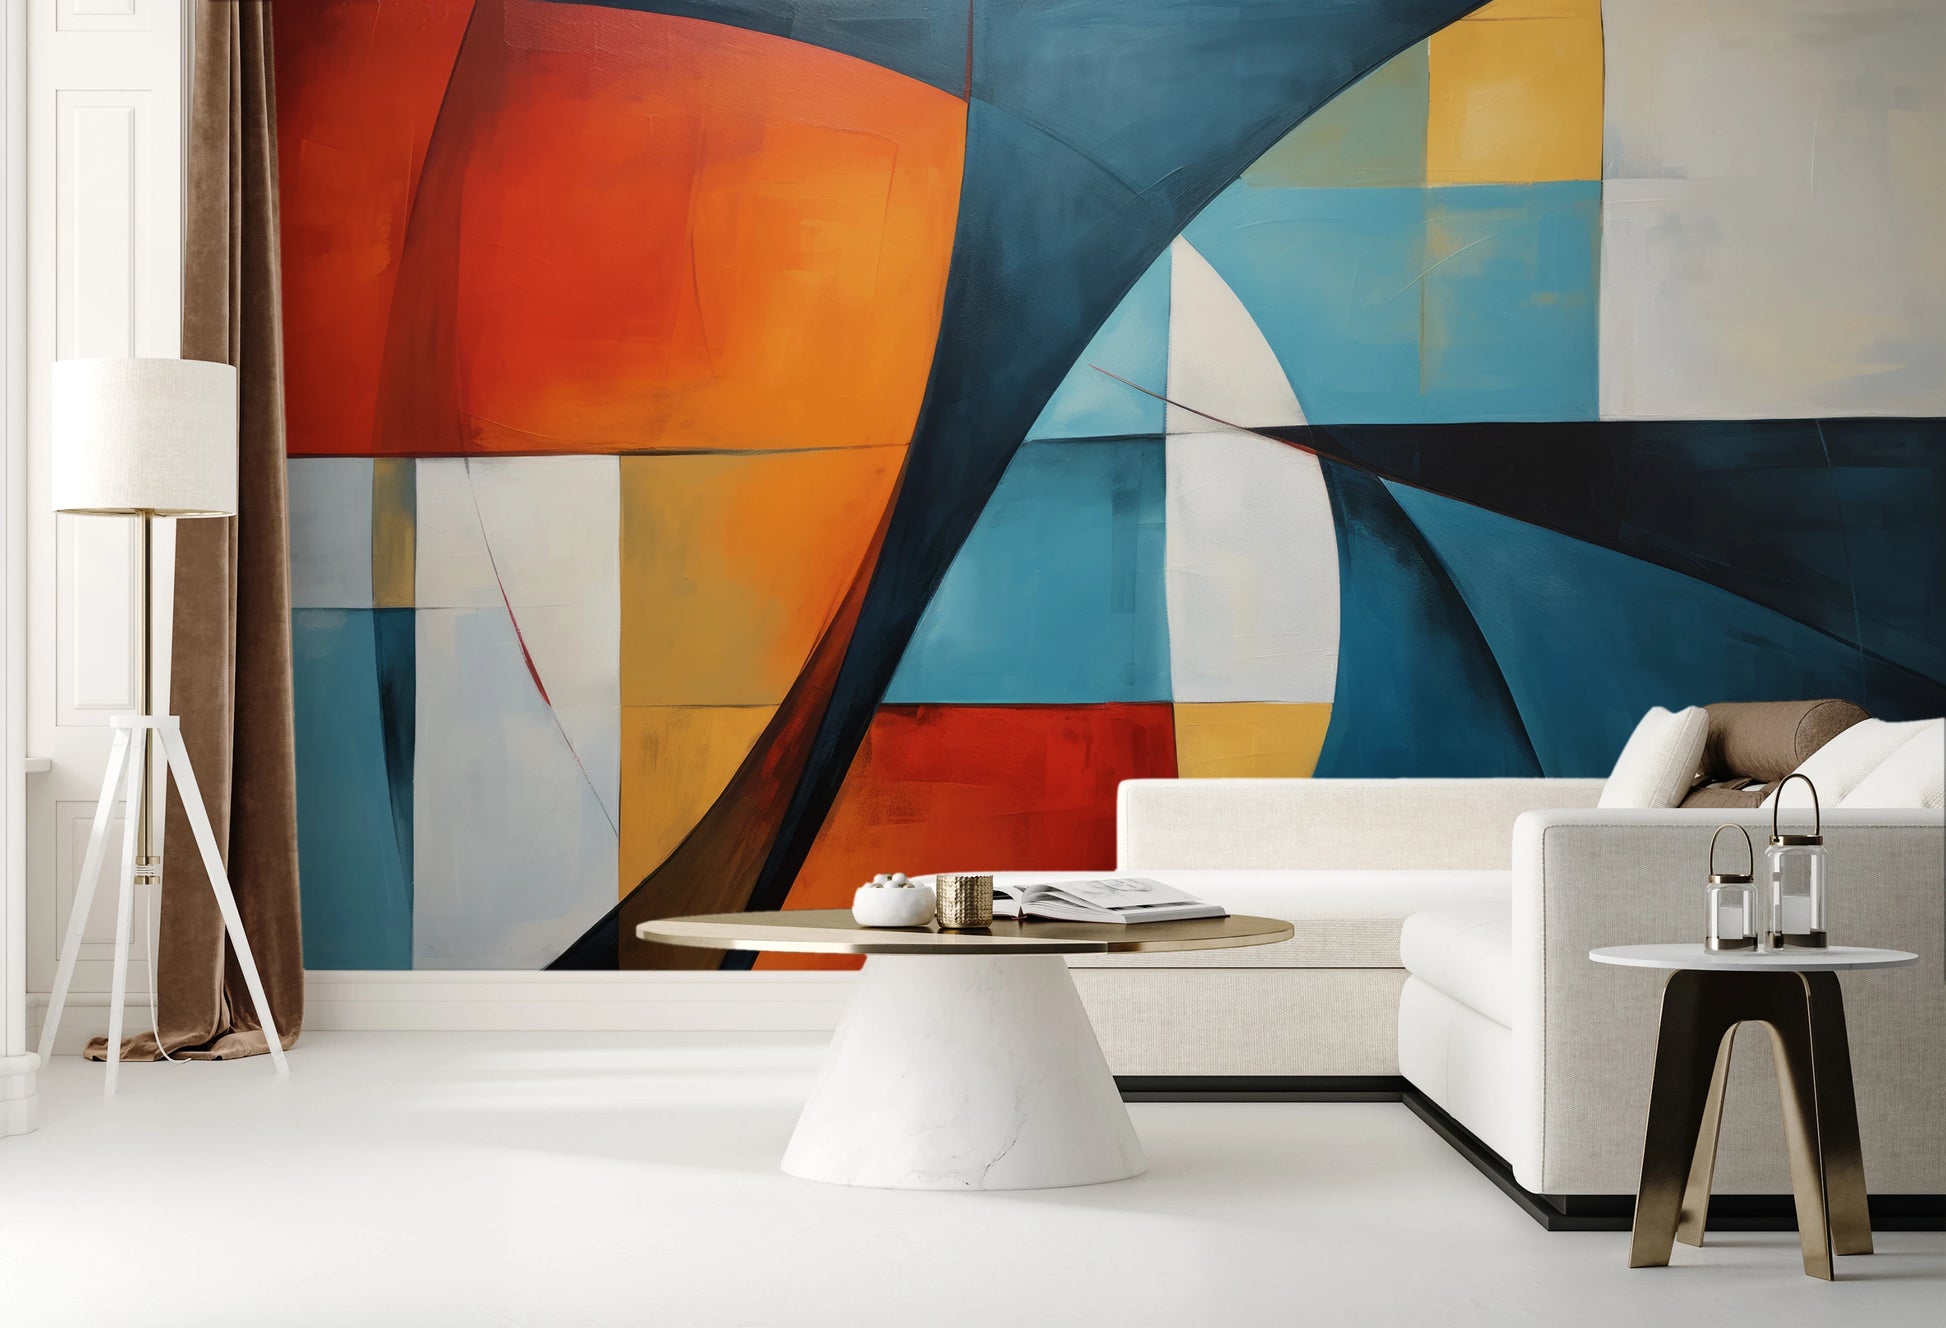 Fototapeta malowana o nazwie Vibrant Abstraction pokazana w aranżacji wnętrza.